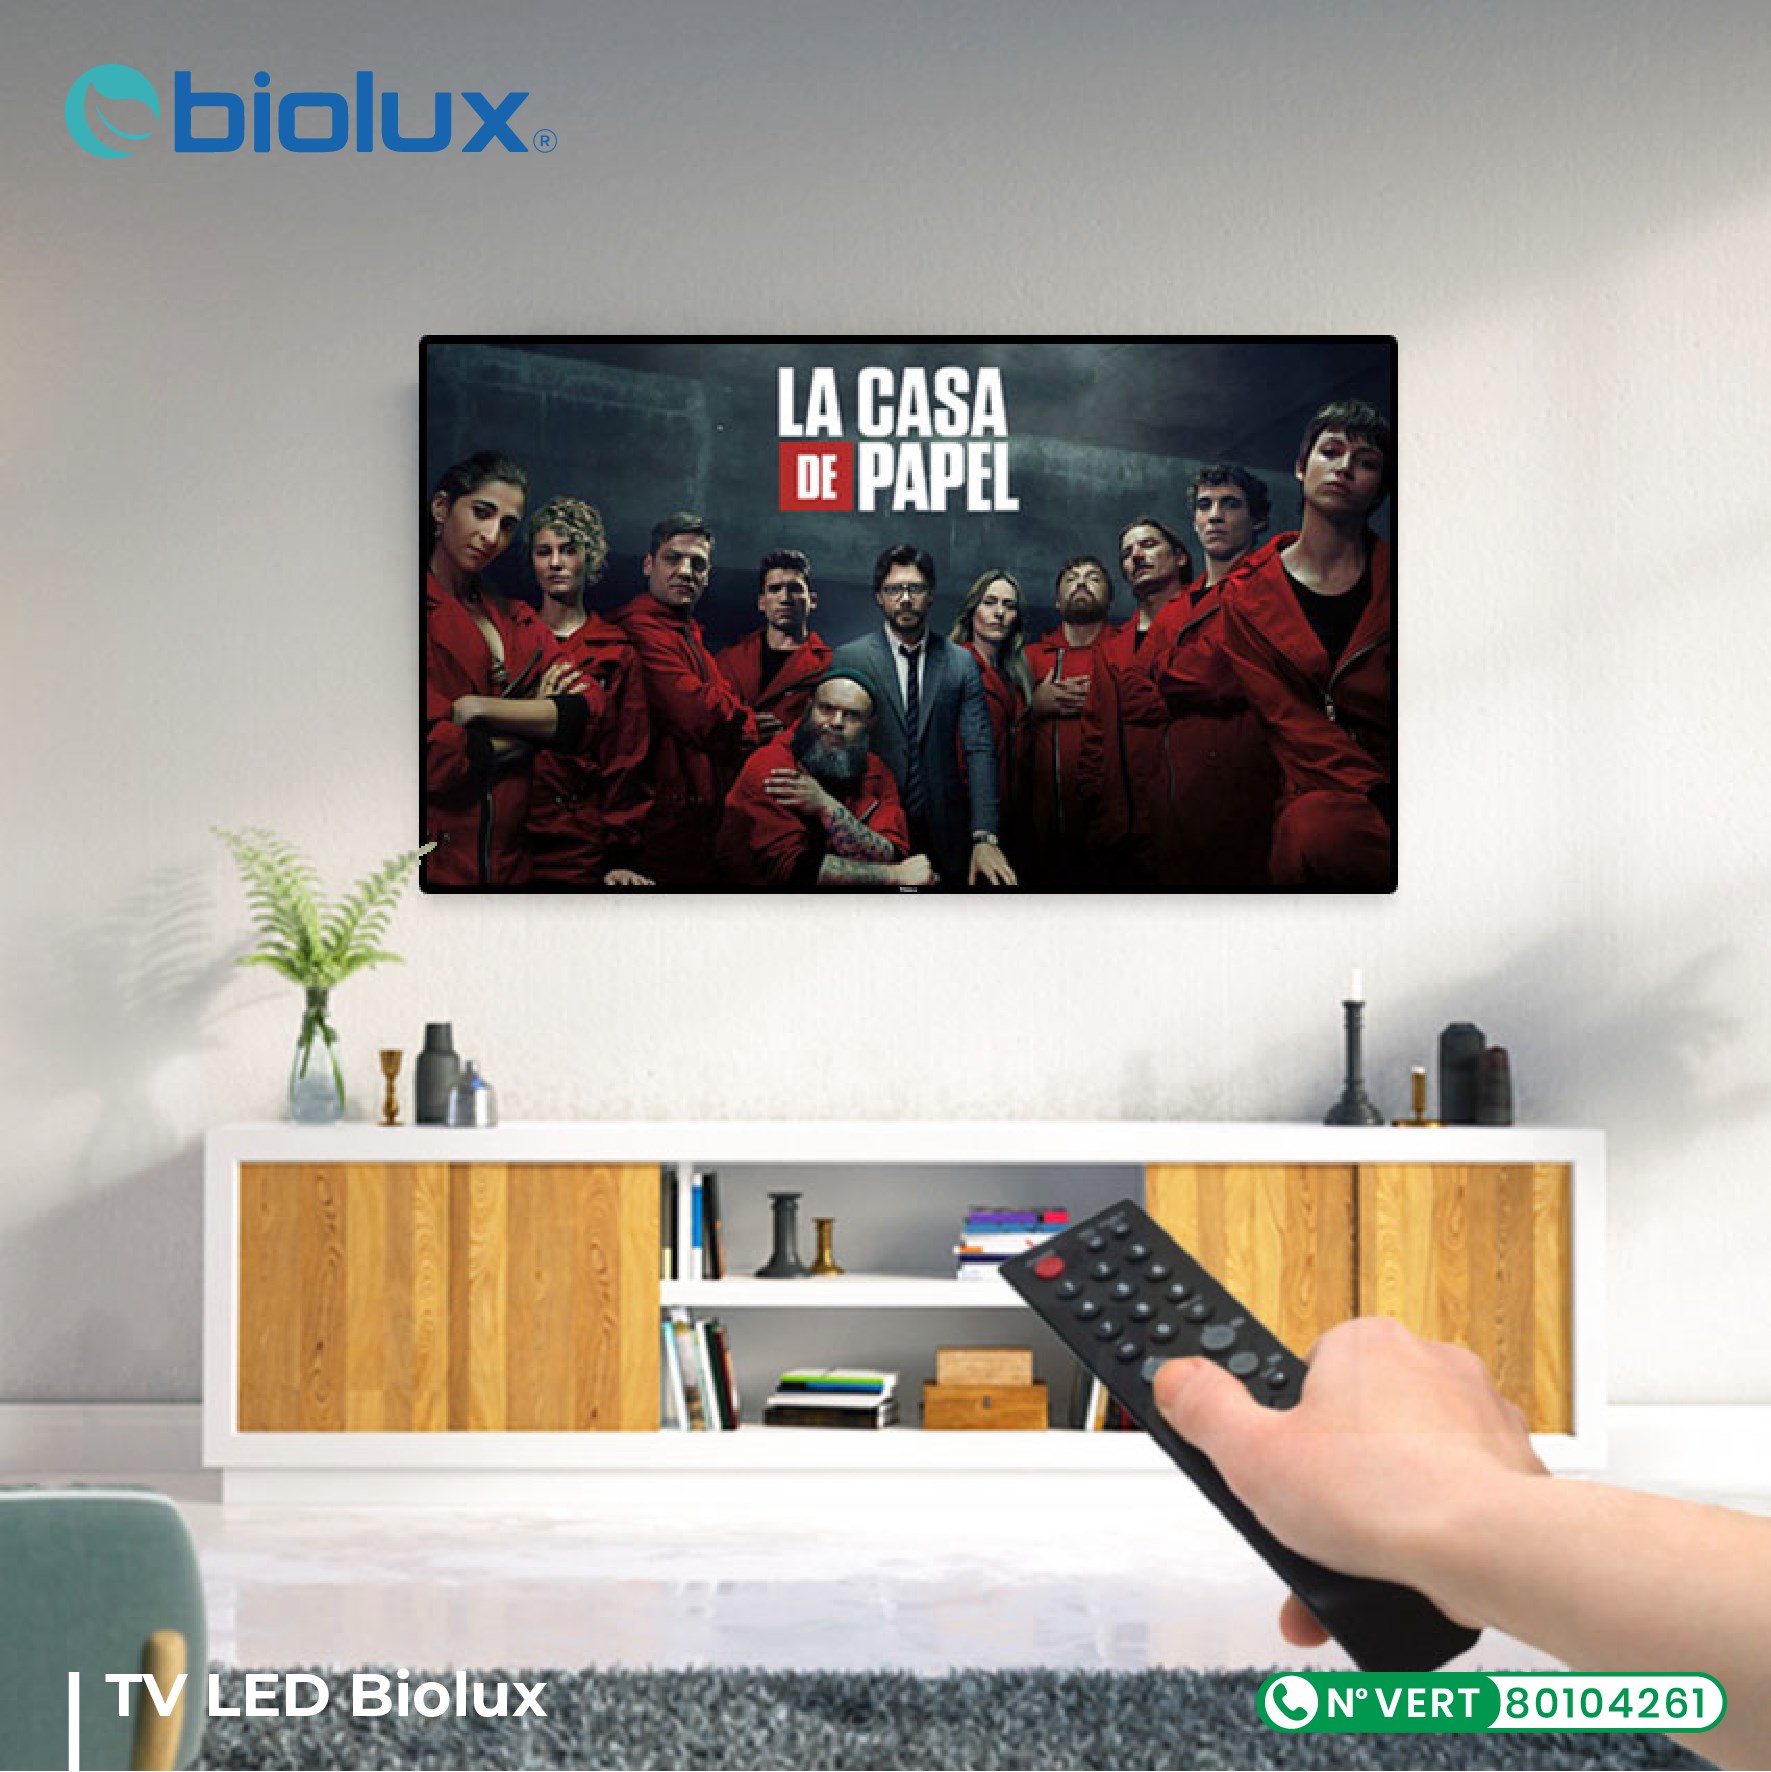 TV LED BIOLUX 43 Tunisie prix